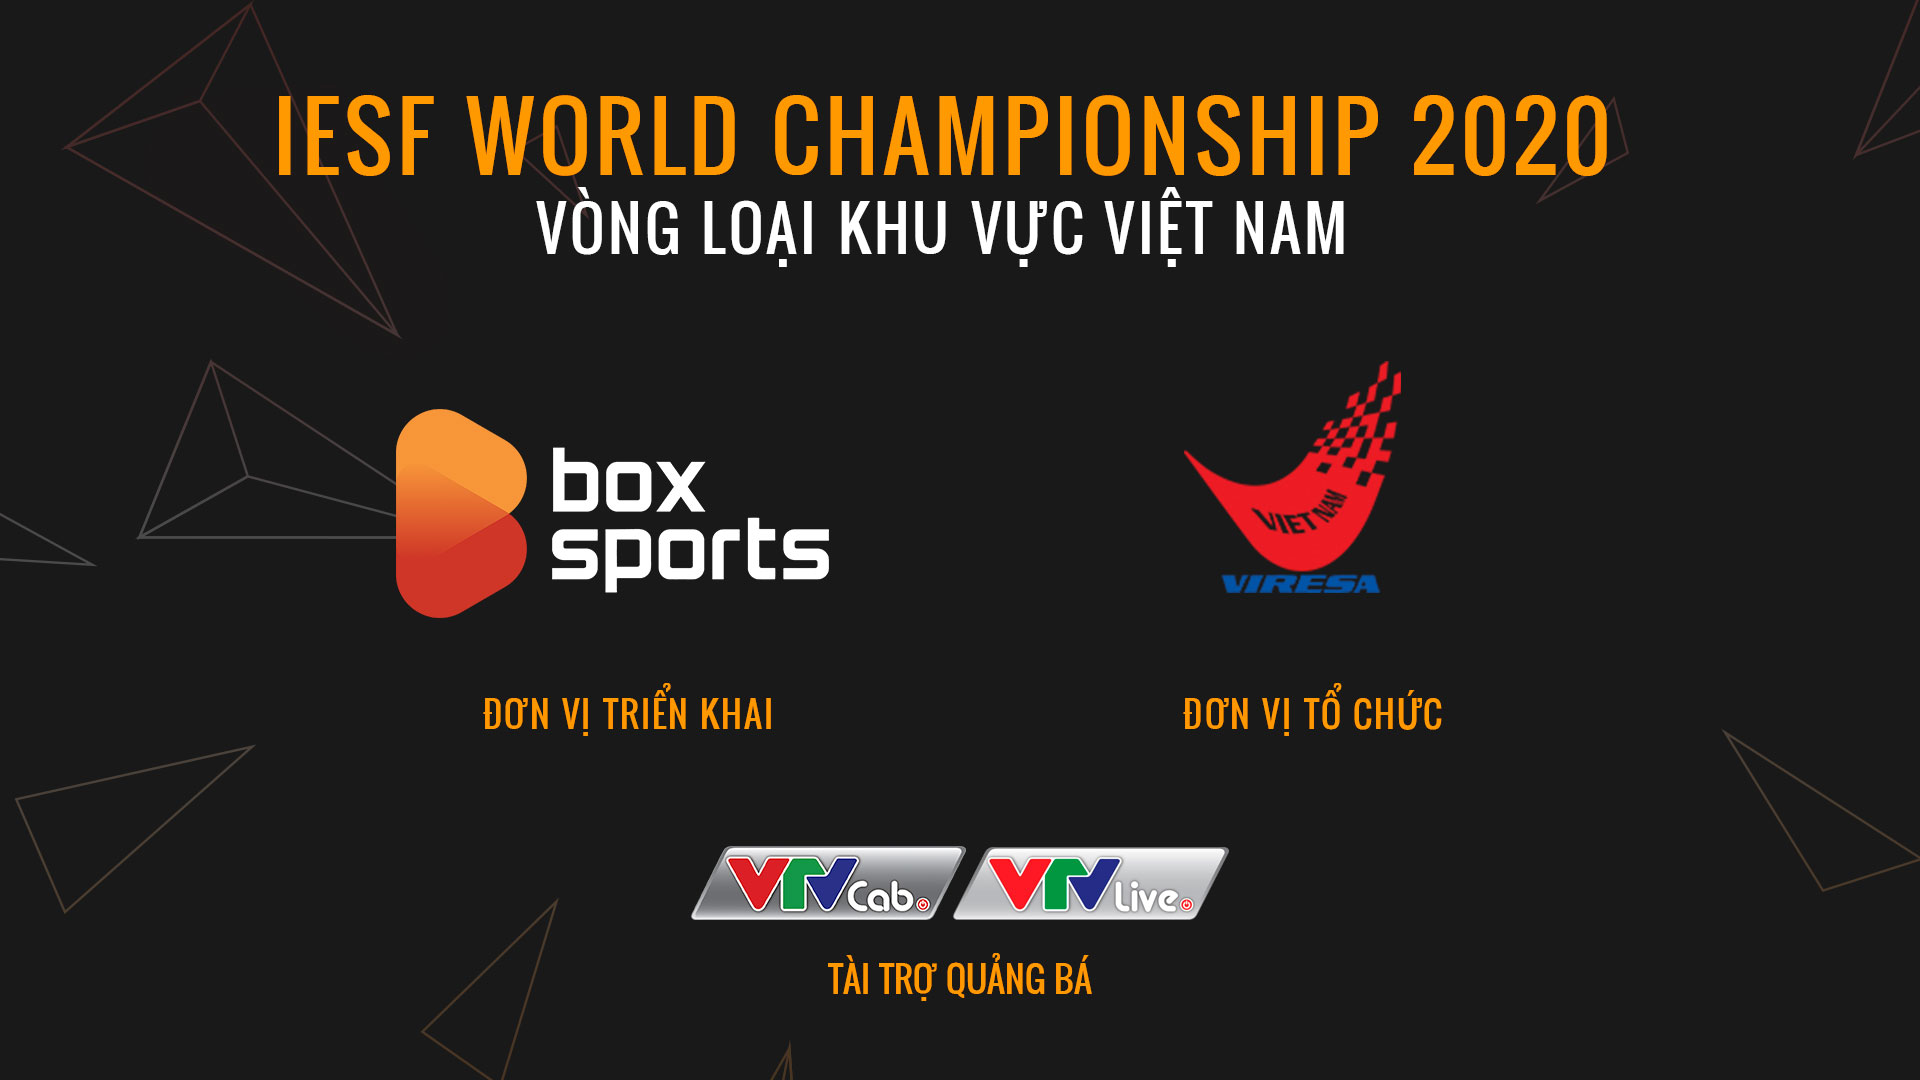 Kết thúc vòng loại IeSF Việt Nam: Những gương mặt ưu tú đại diện Esport Việt chinh chiến tại đấu trường khu vực vào tháng 10